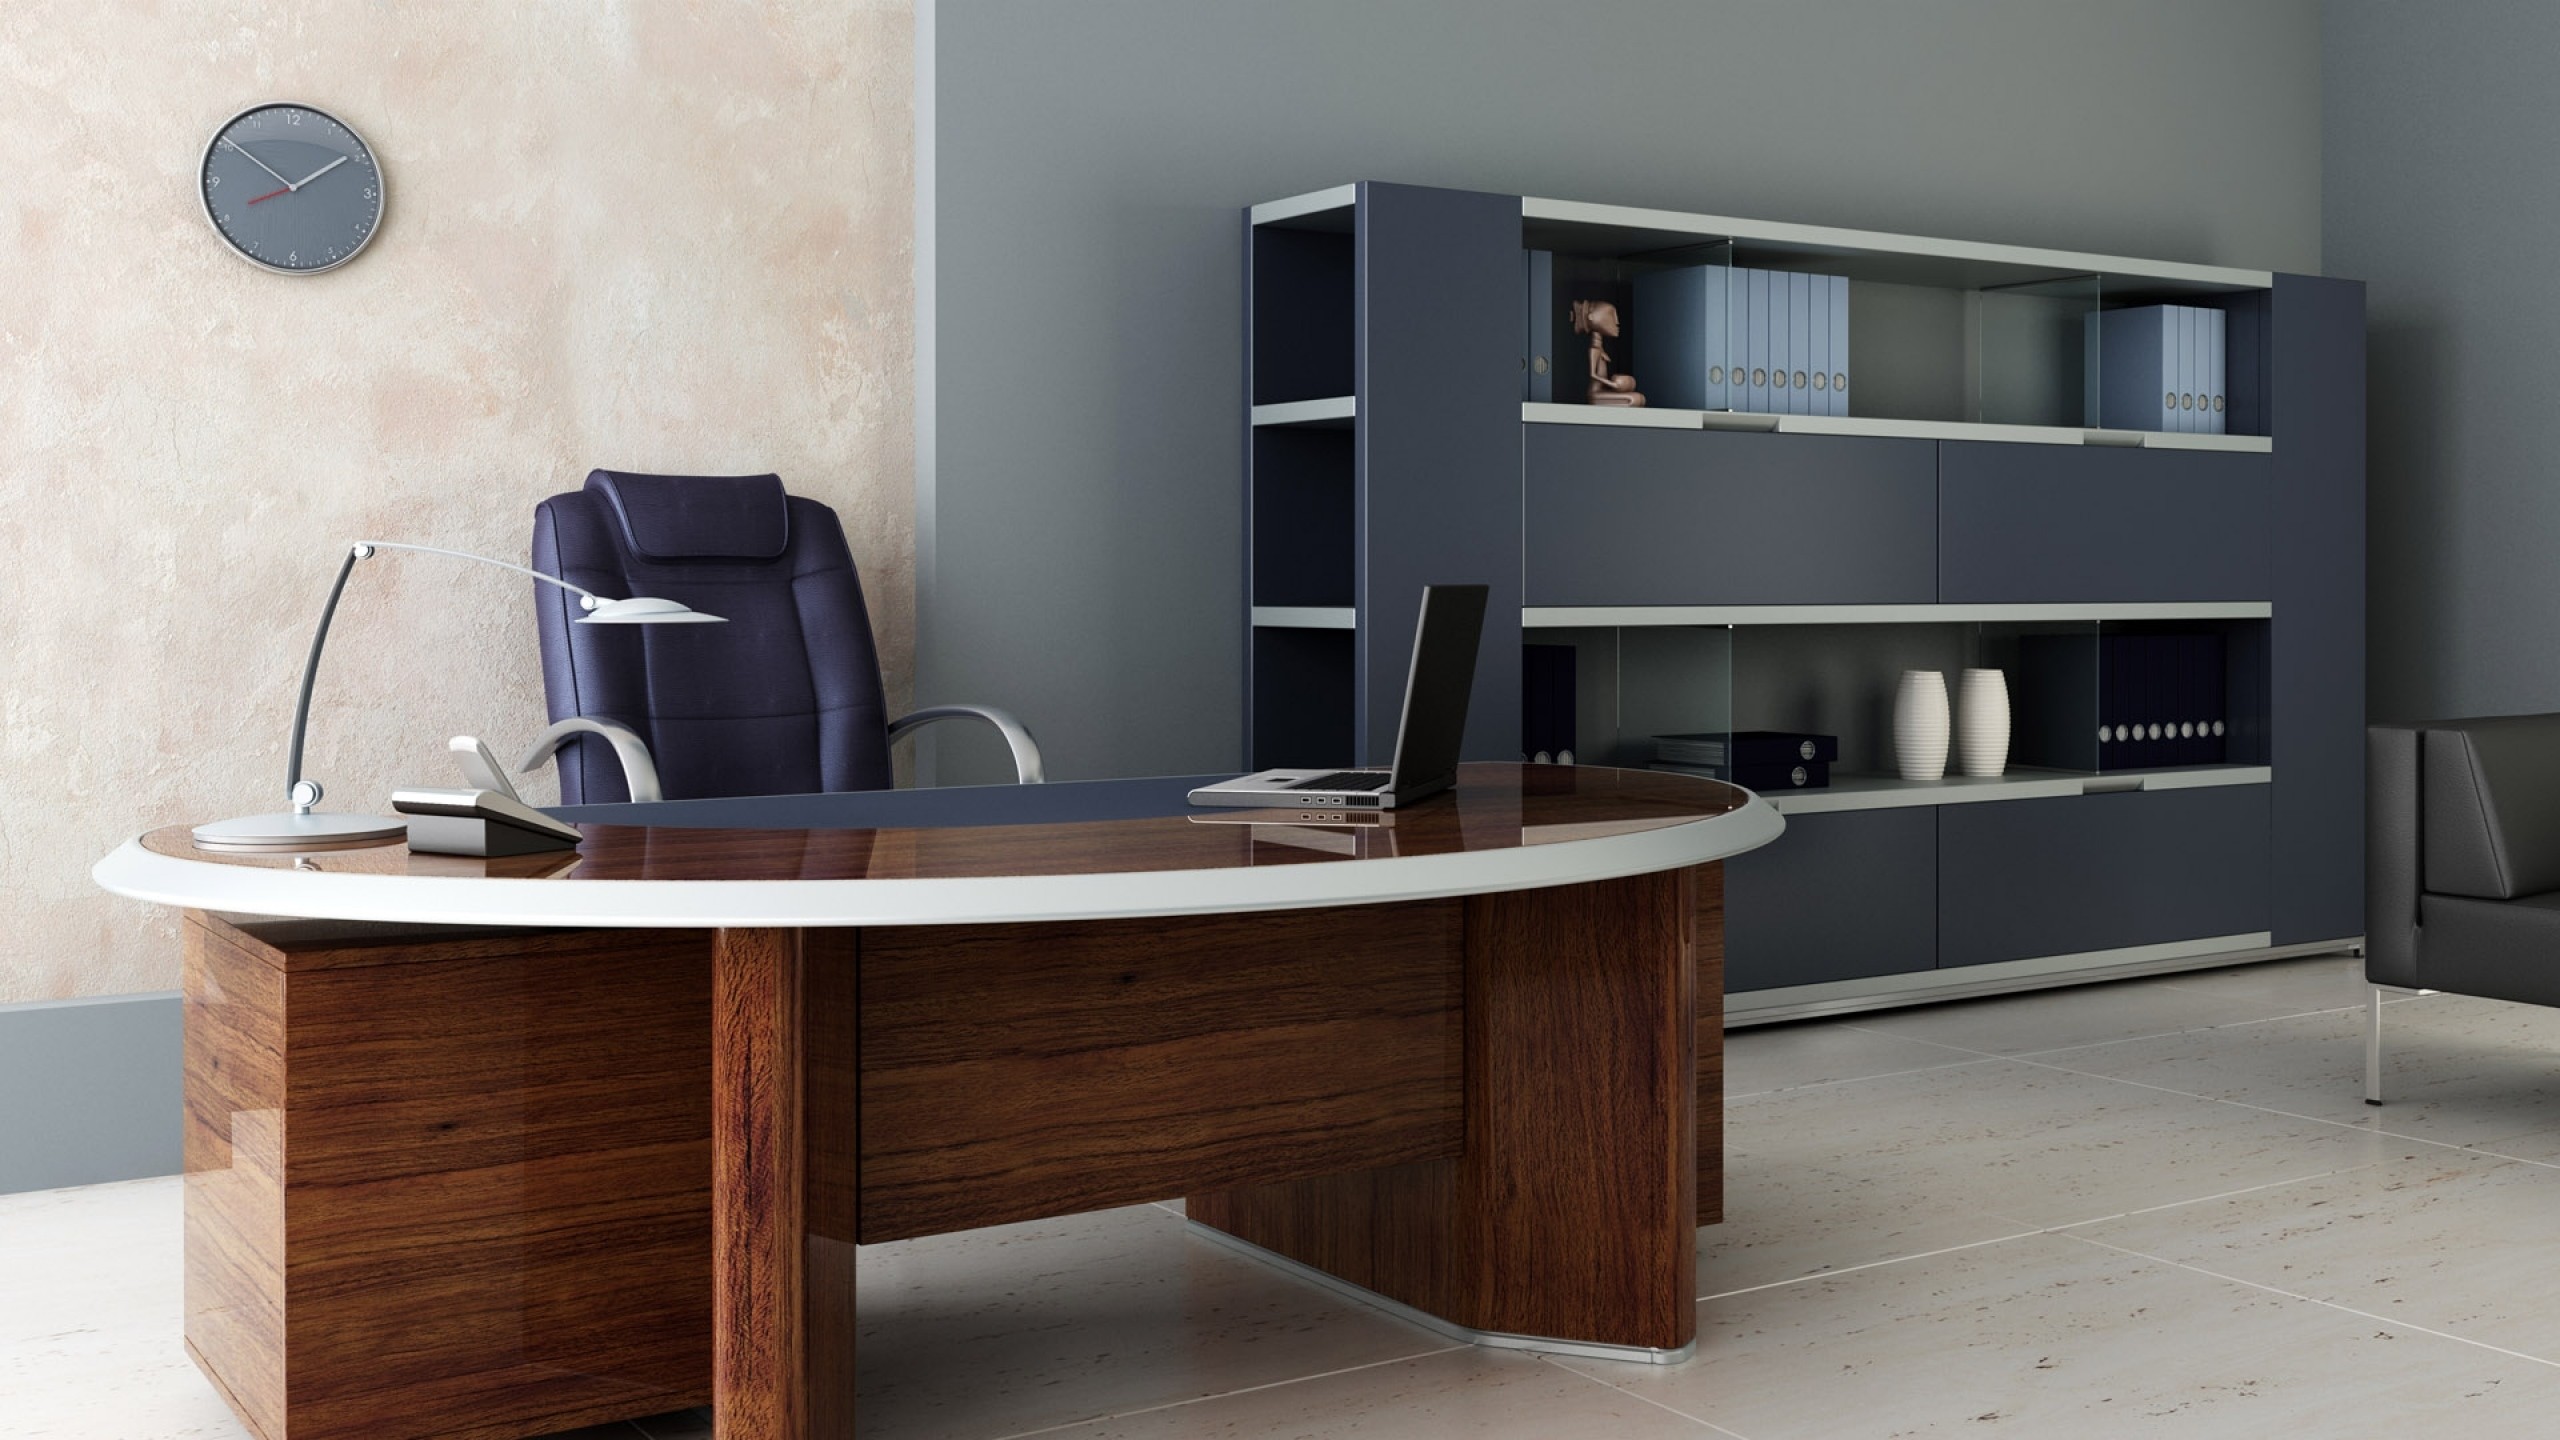 2560x1440  Wallpaper room, office, desk, chair, shelves